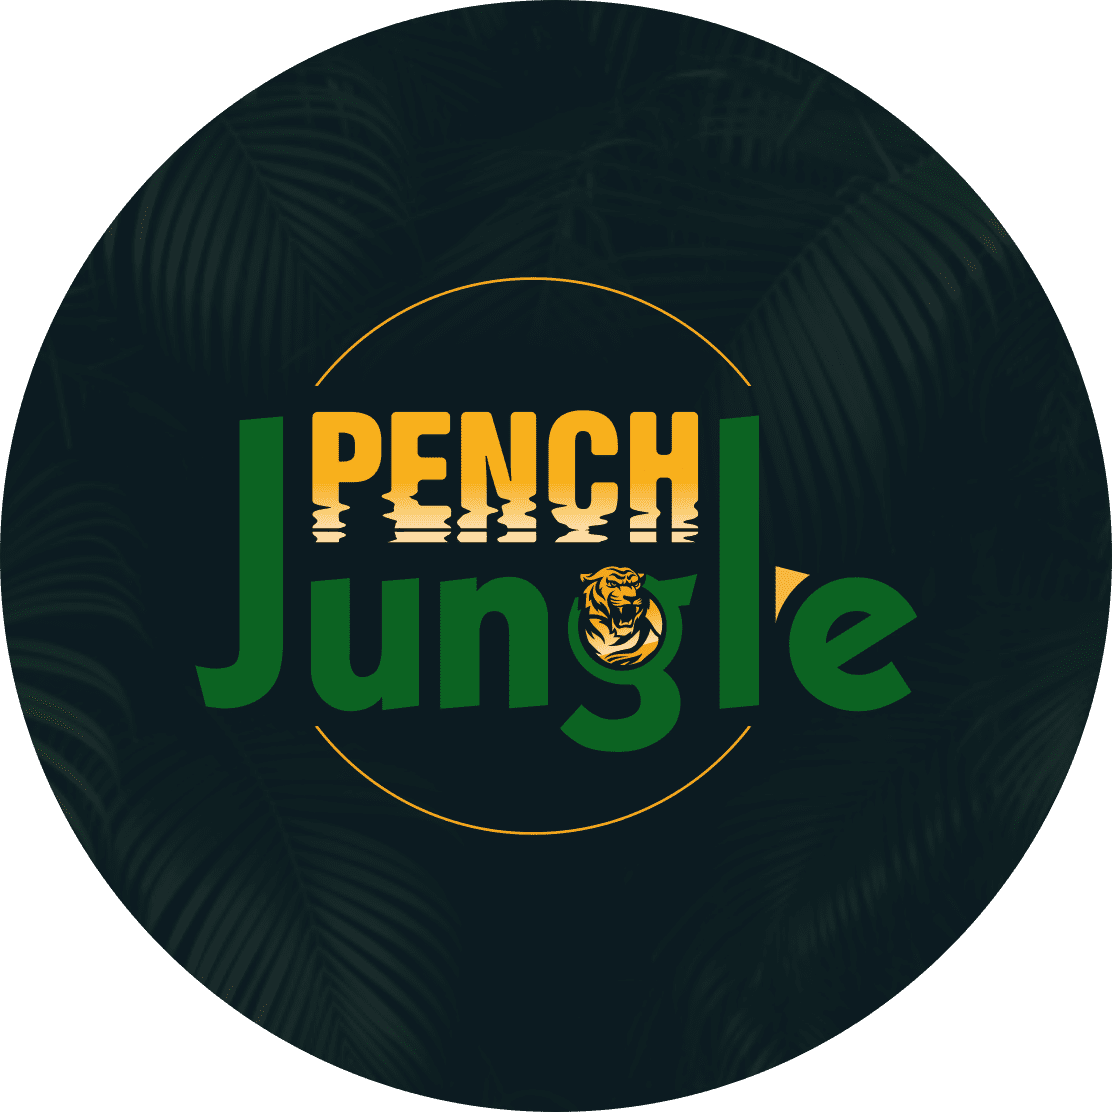 Pench jungle